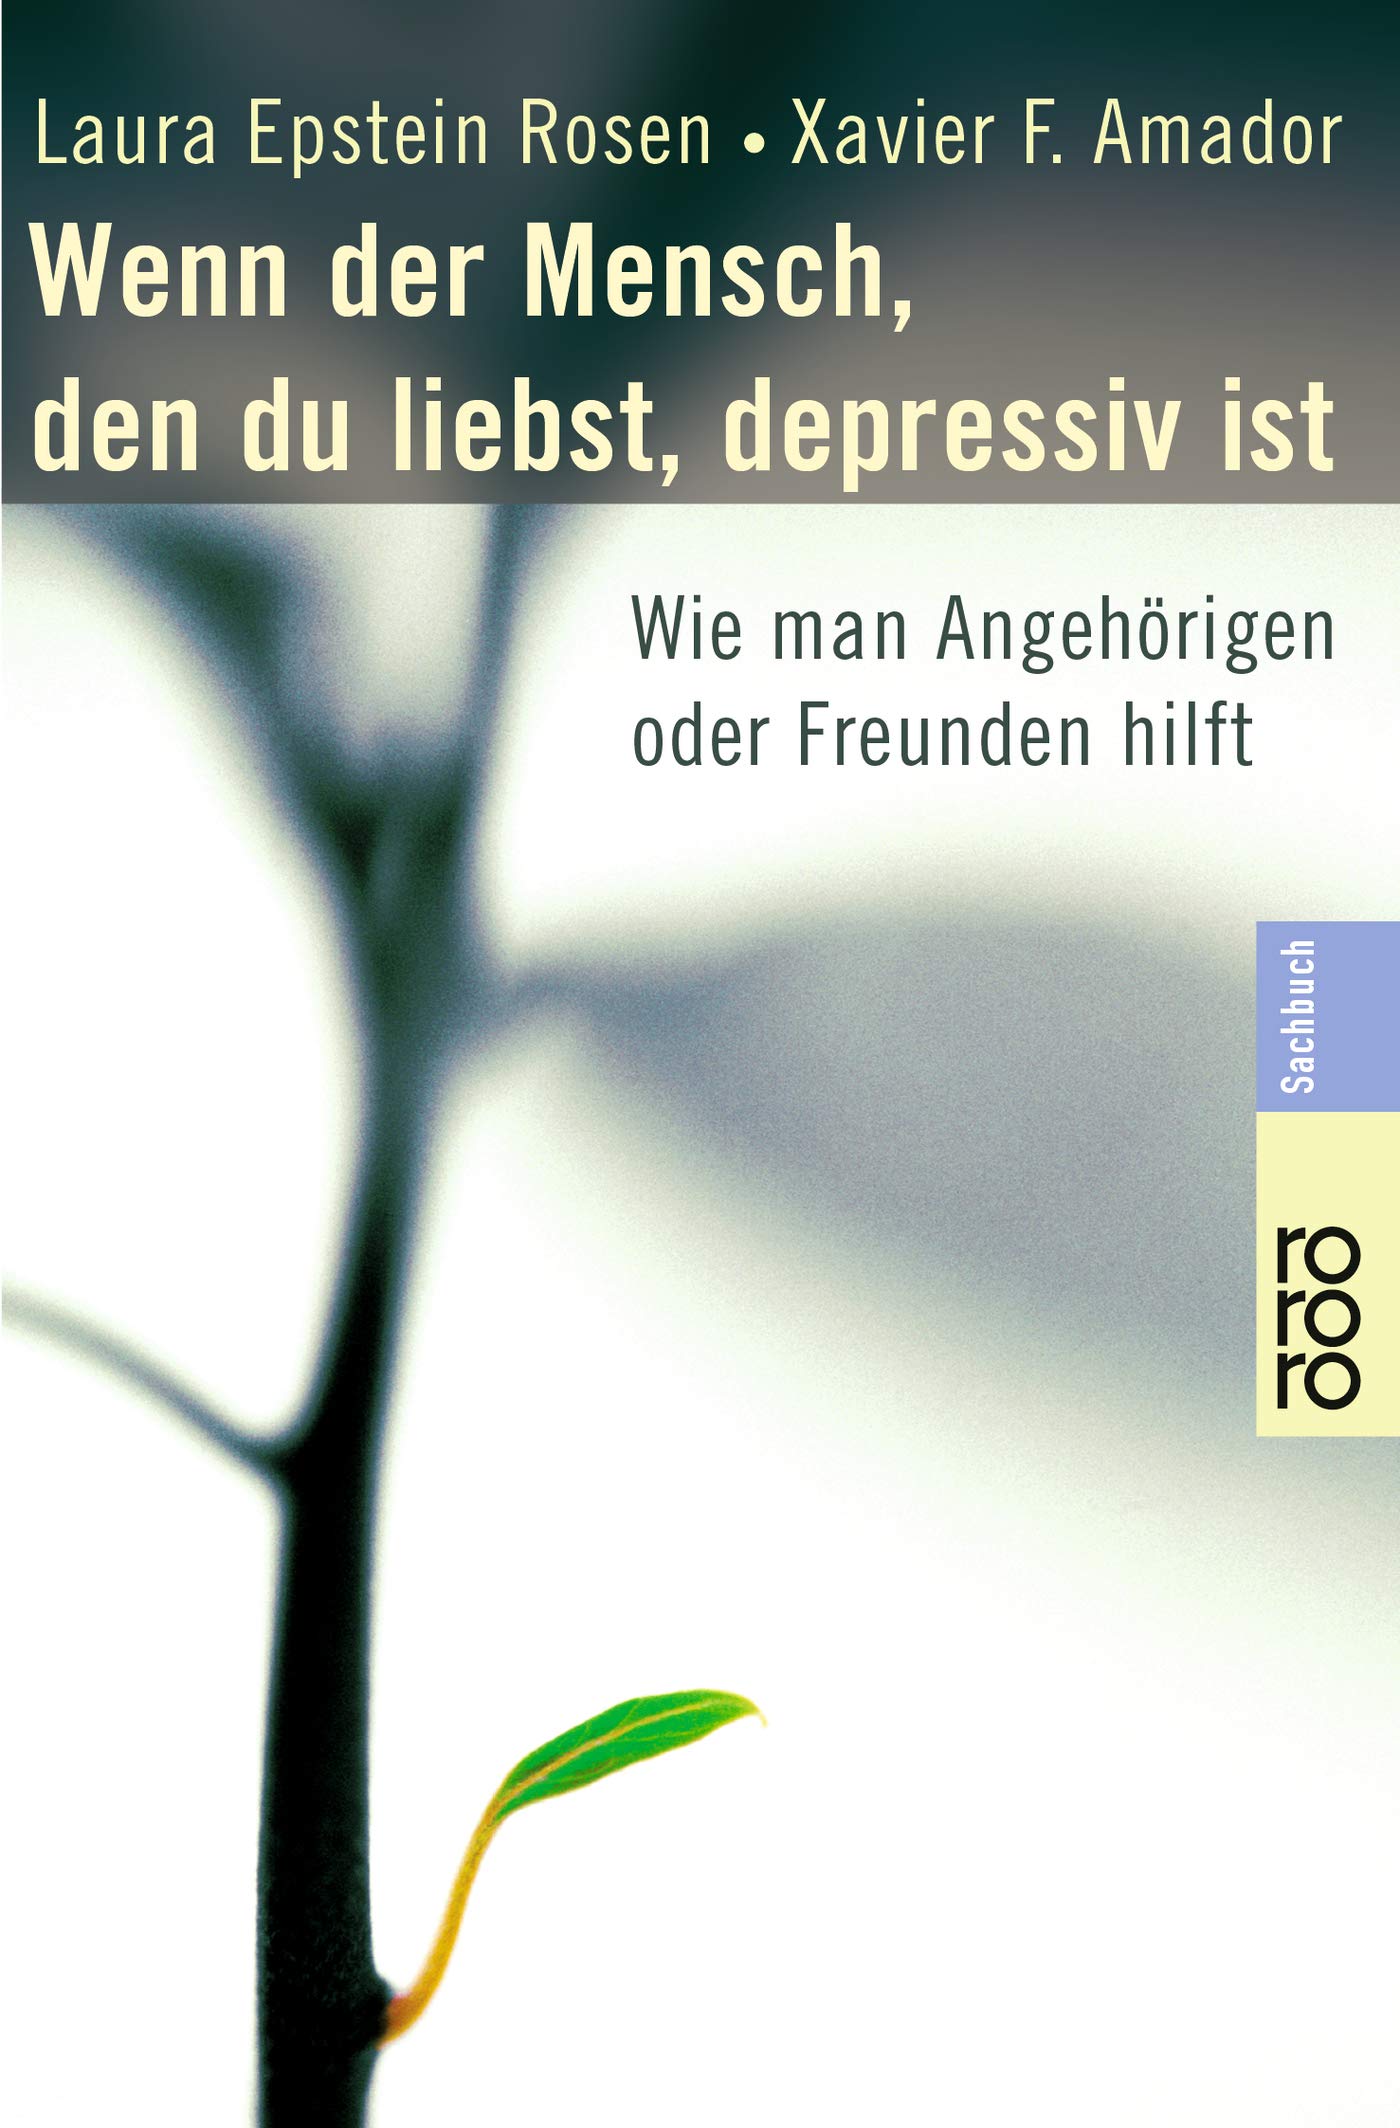 Buch: Wenn der Mensch, den du liebst, depressiv ist: Wie man Angehörigen oder Freunden hilft (Amazon)